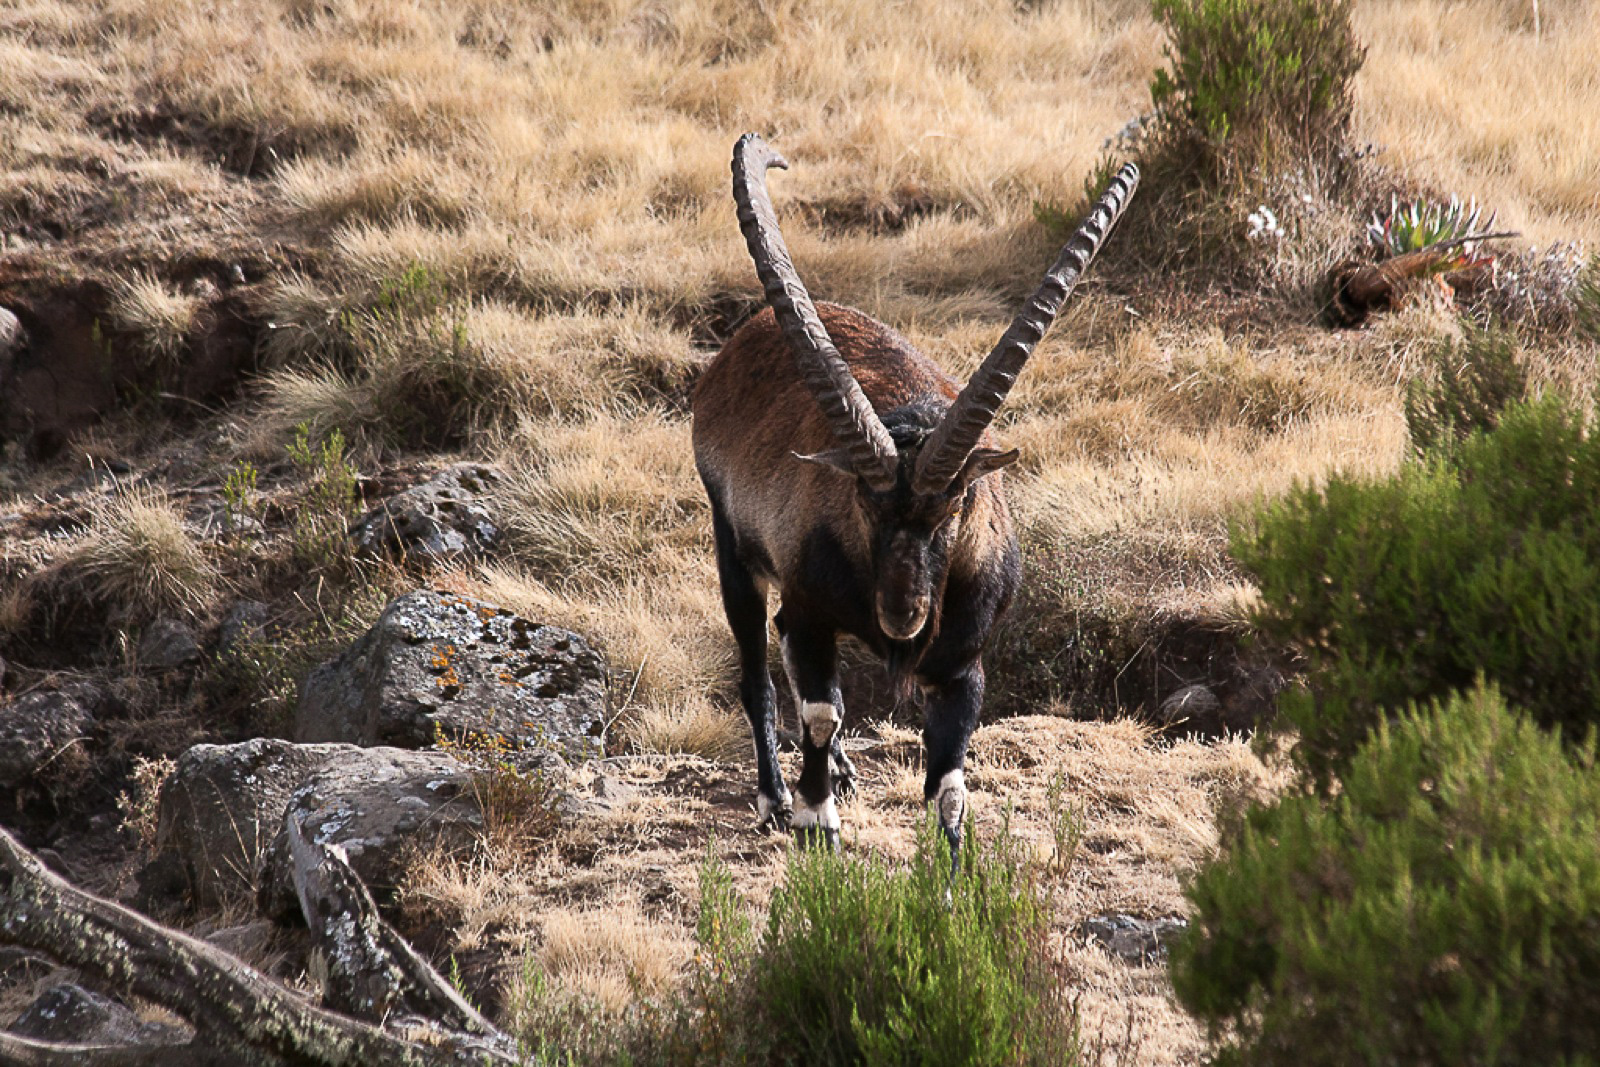 The Walia ibex